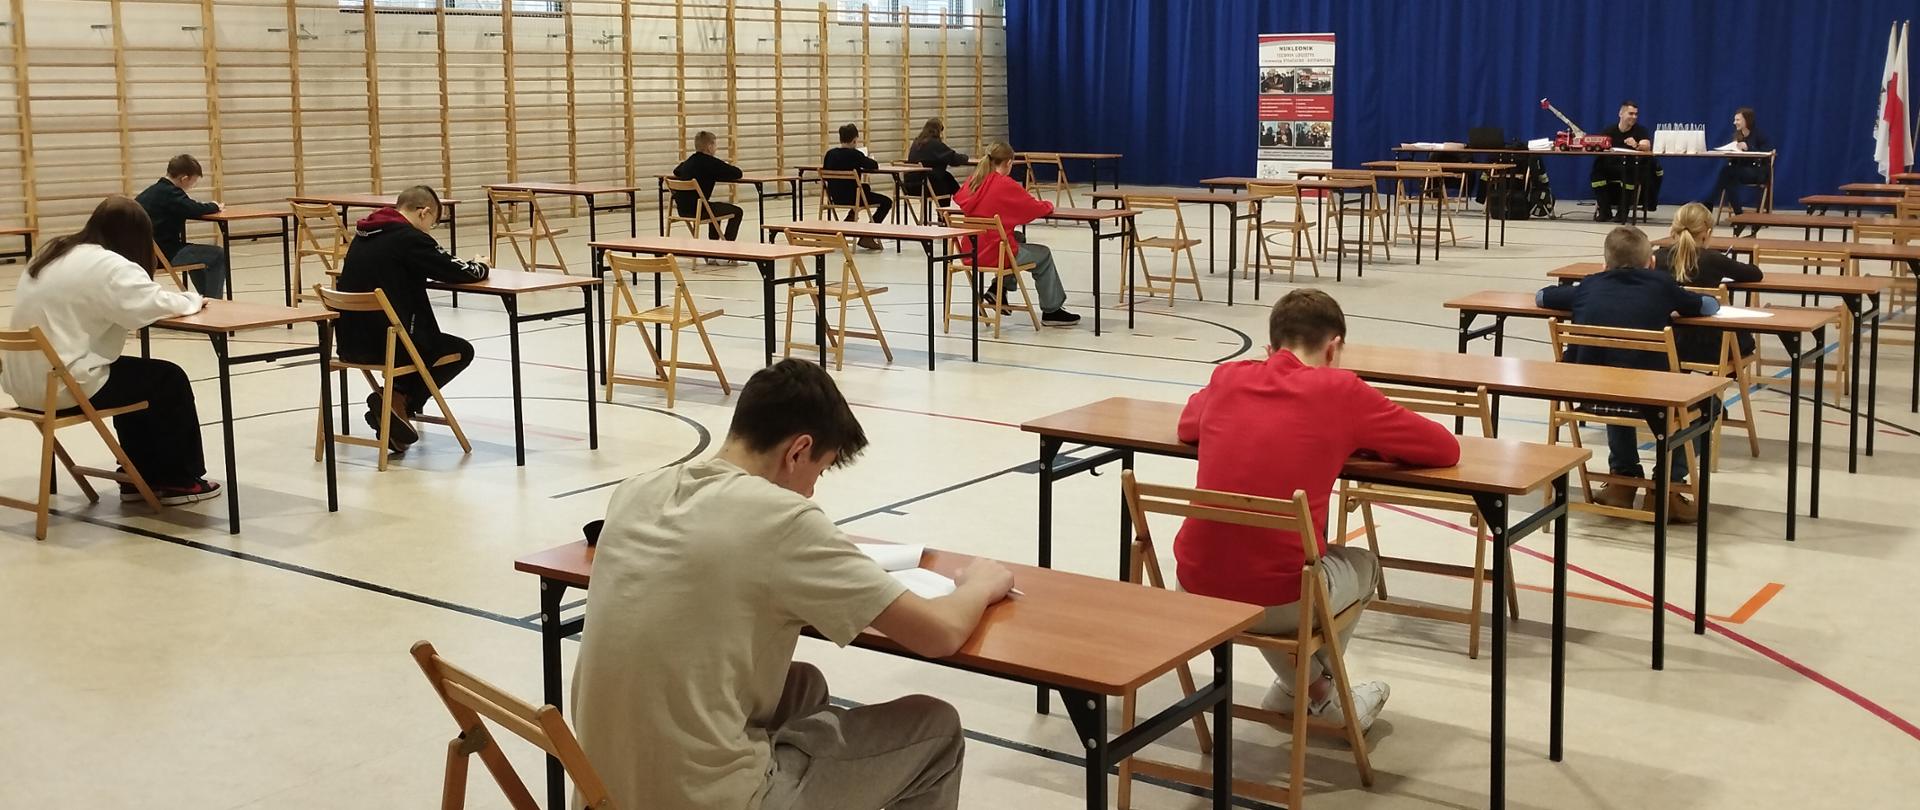 Na zdjęciu widać dzieci ze szkół podstawowych siedzących w ławkach szkolnych, piszących test konkursu Ogólnopolskiego Turnieju Wiedzy Pożarniczej.